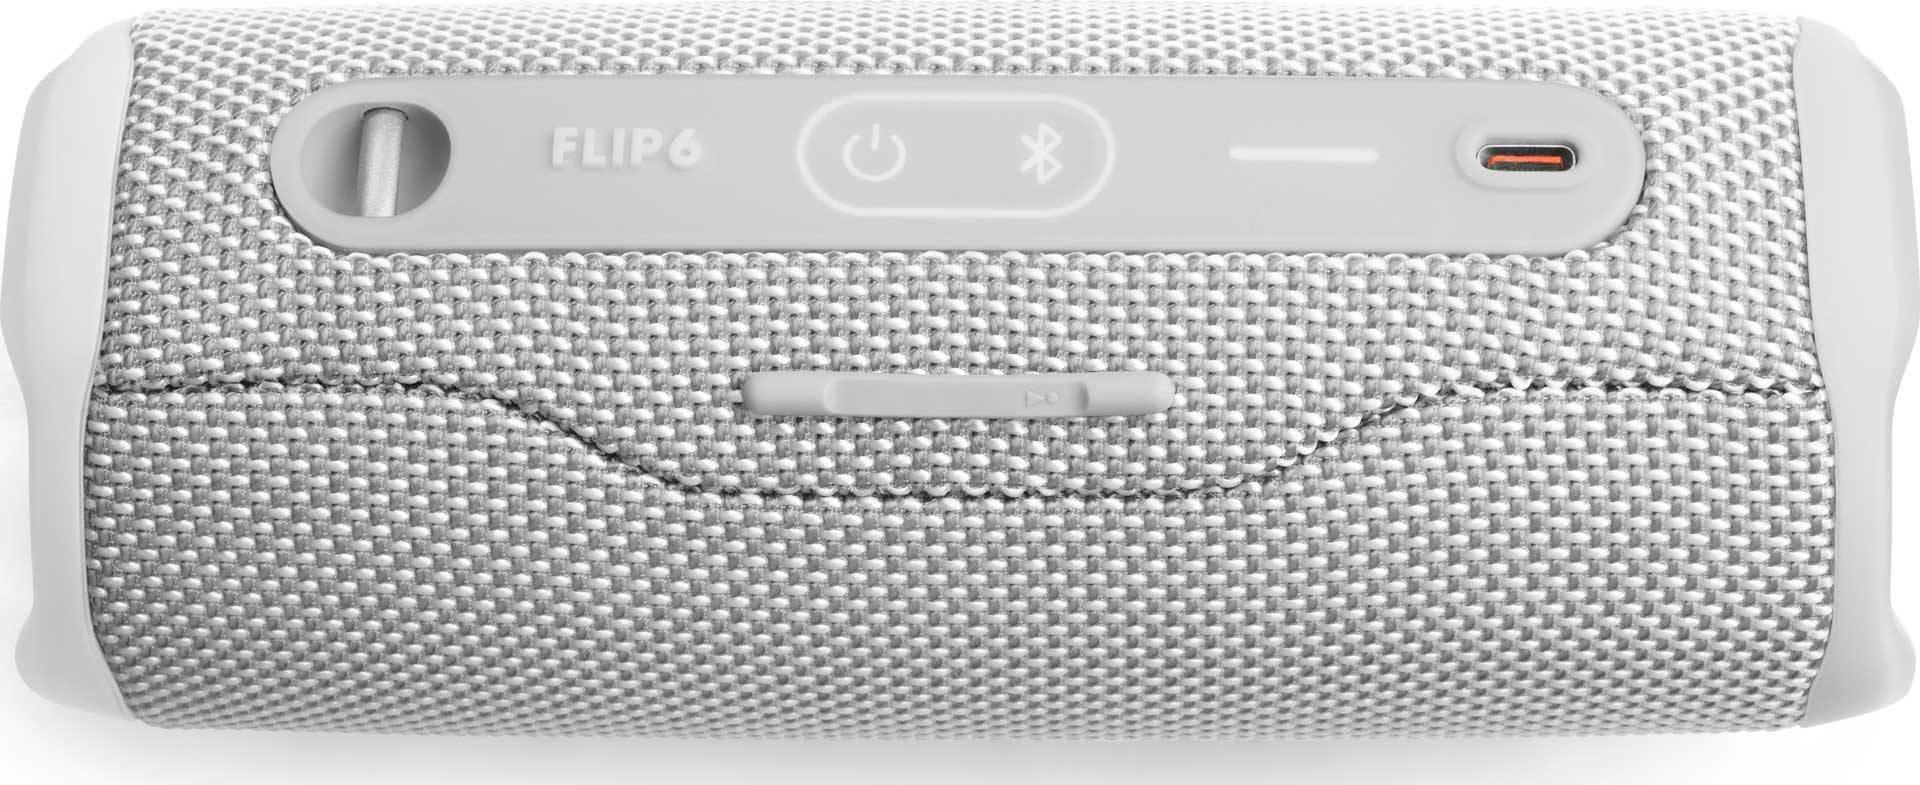 JBL  JBL FLIP 6 Tragbarer Stereo-Lautsprecher Weiß 20 W 